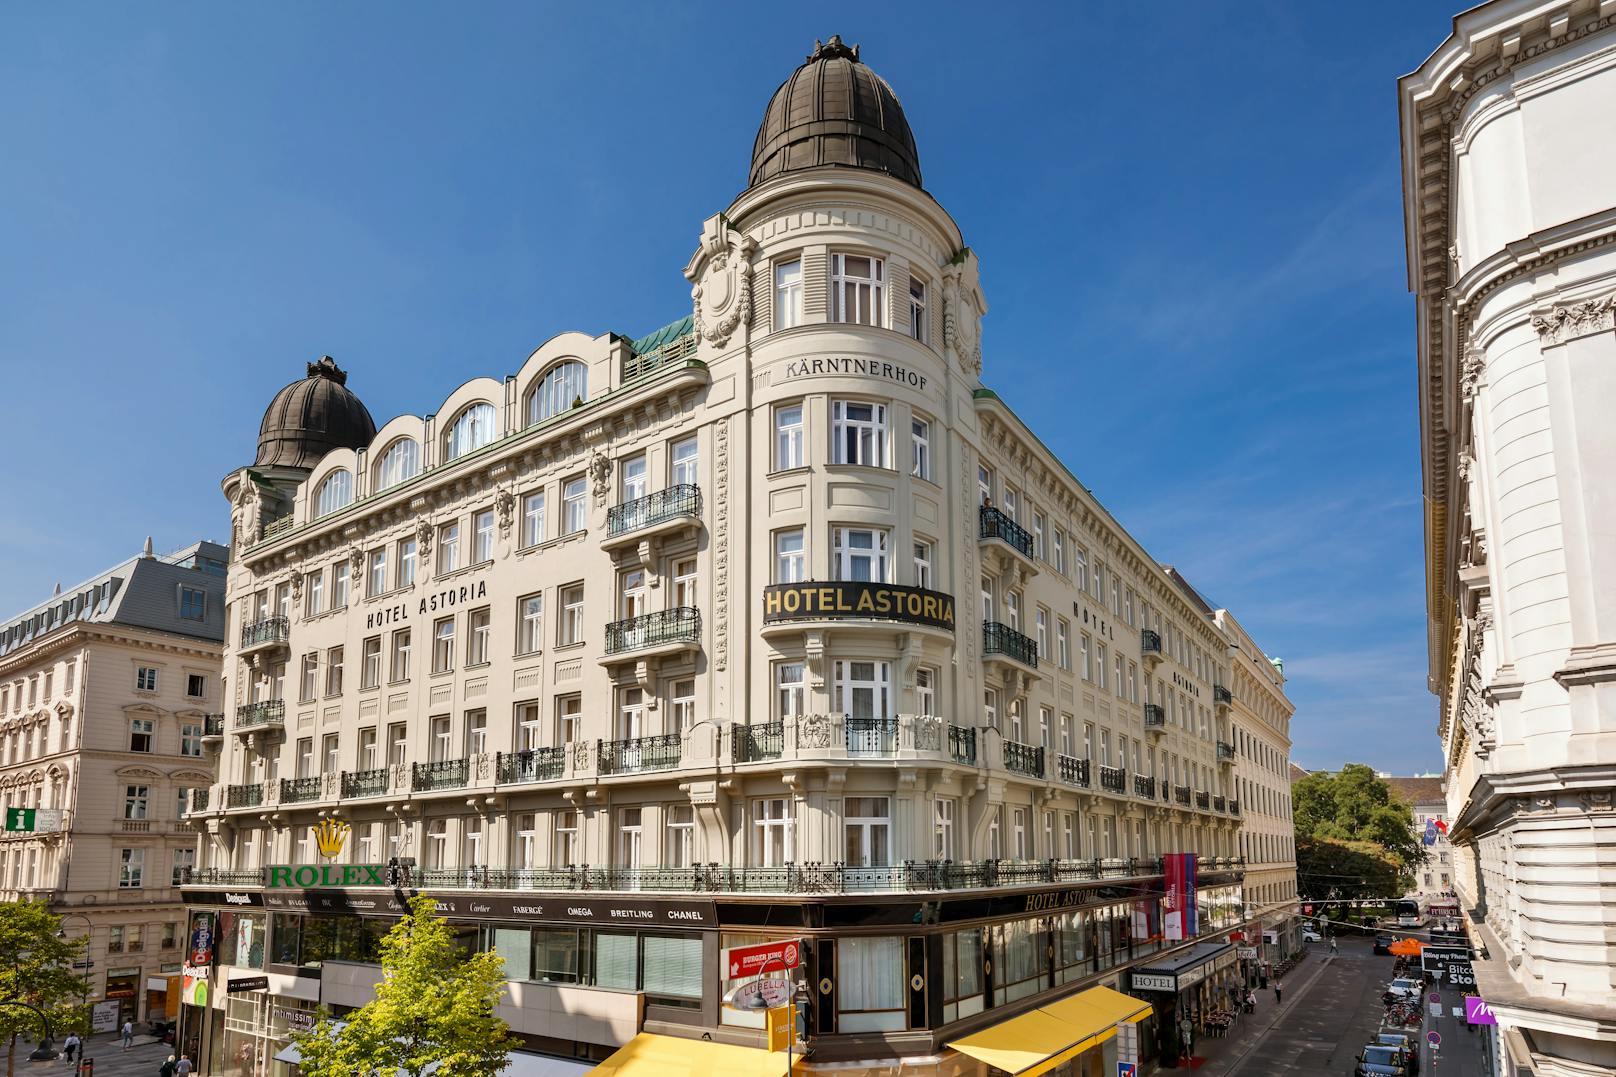 Austria Trend Hotel Astoria&nbsp;